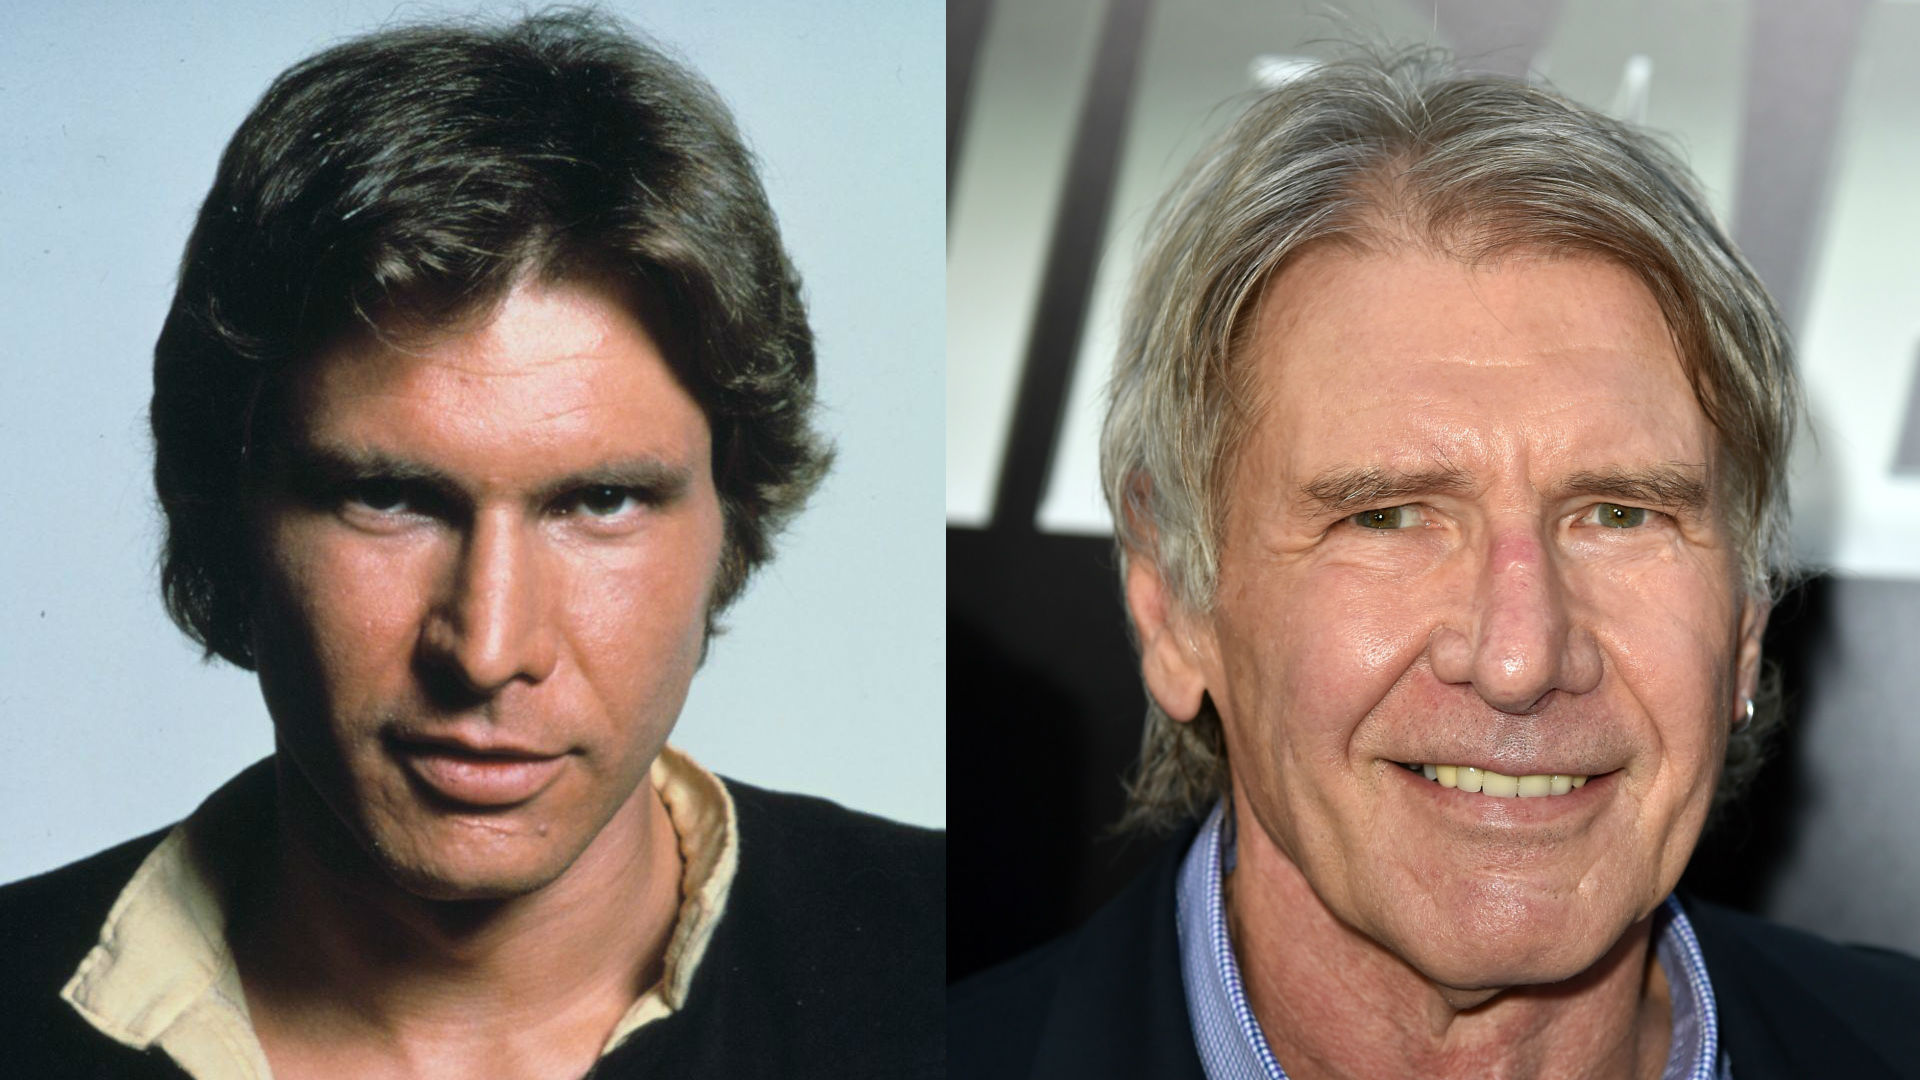 Antes e depois: veja como estão os atores da trilogia clássica de Star Wars  - Star Wars